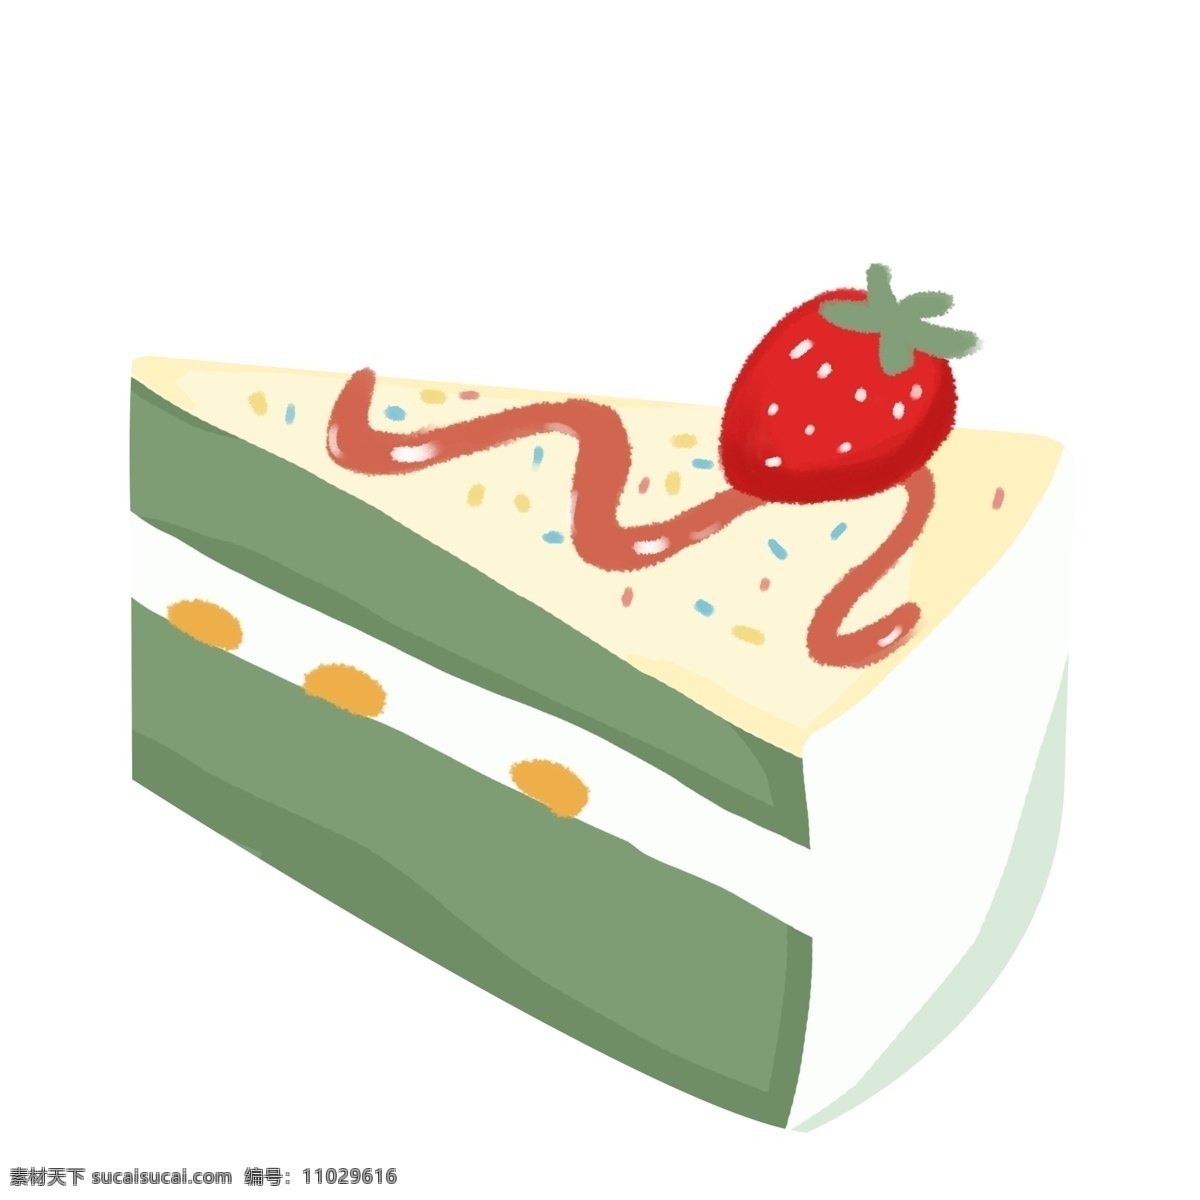 美味 蛋糕 甜点 食物 手绘 元素 抹茶味奶油 大颗草莓 杯子蛋糕 生日蛋糕 节日庆祝 草莓蛋糕 抹茶蛋糕 矢量甜点食物 简约甜点